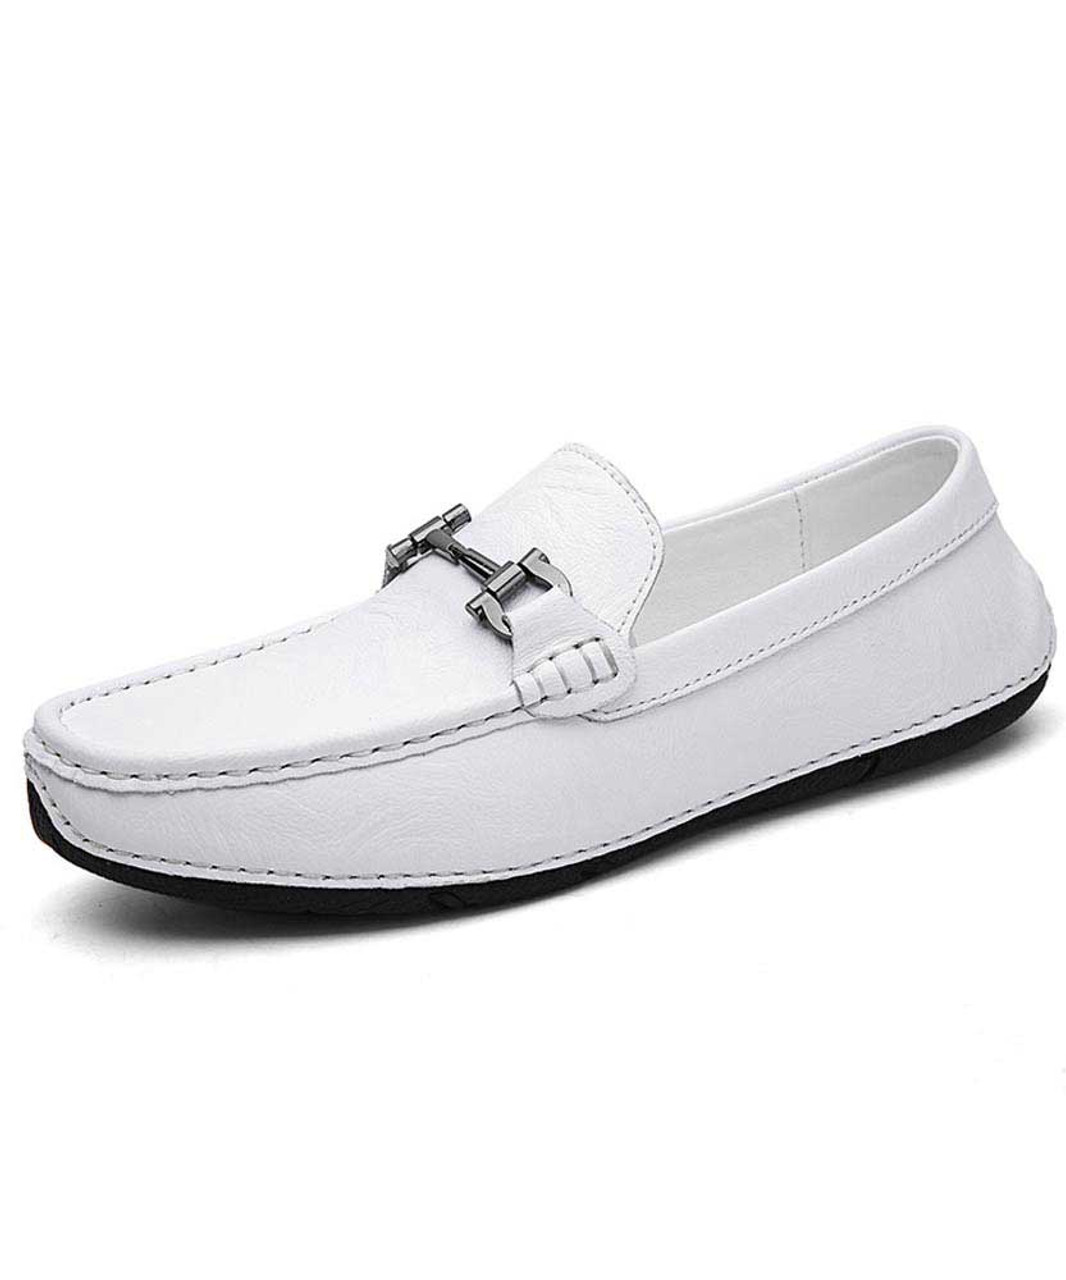 mens white slip on loafers